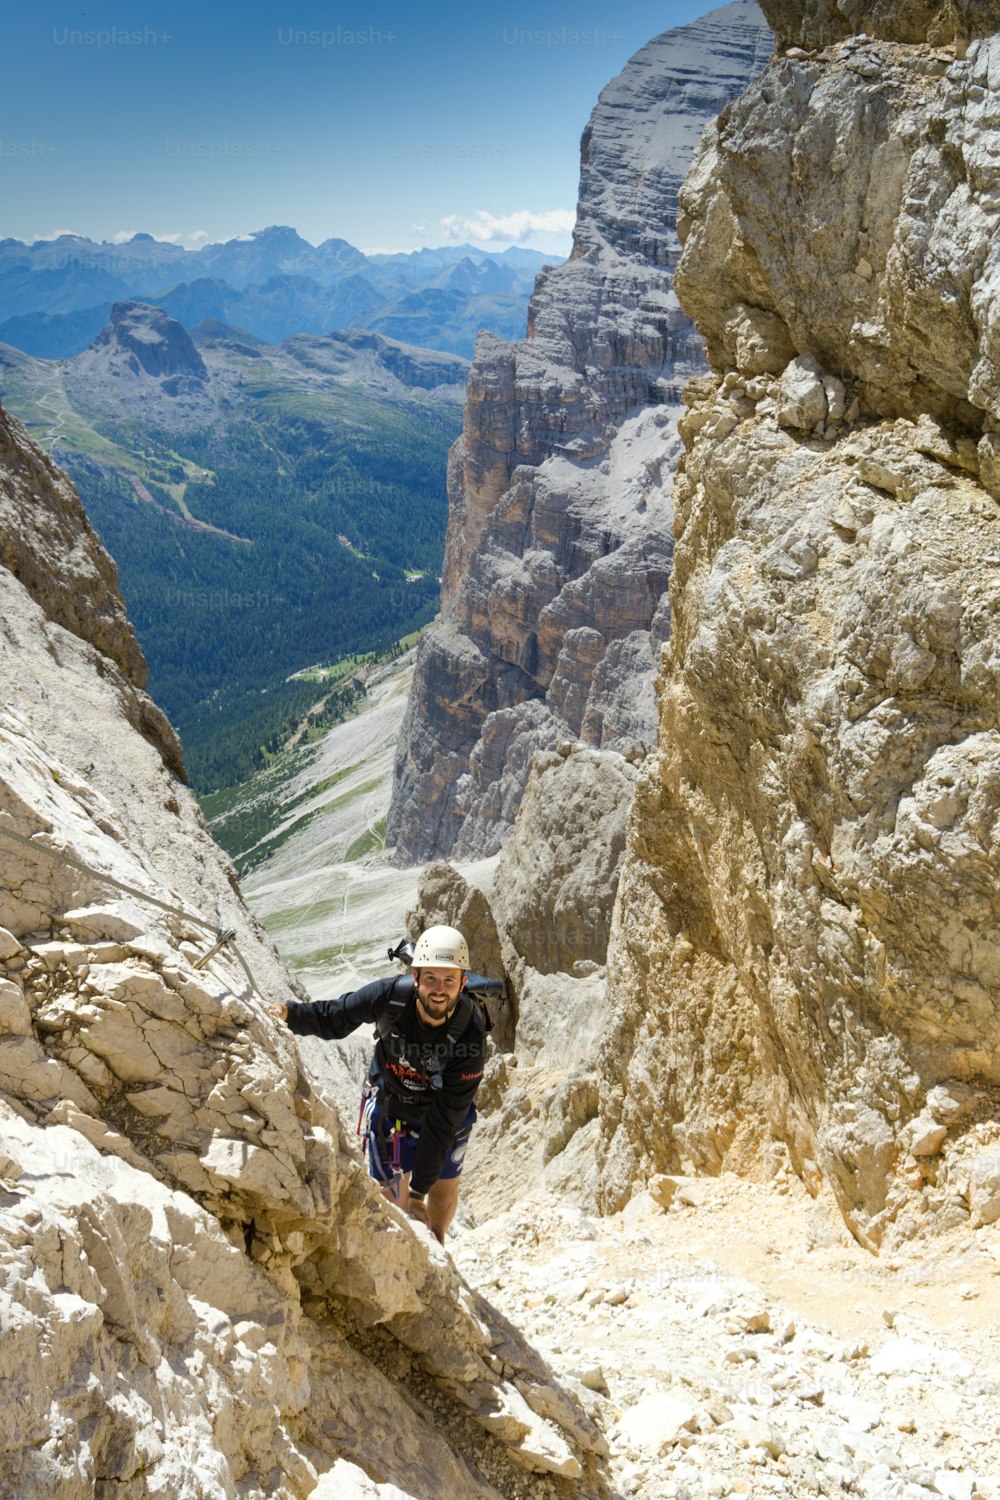 コルティナ・ダンペッツォ(Cortina d'Ampezzo)の上の急なフェラータ通り(Via Ferrata)の男性登山者